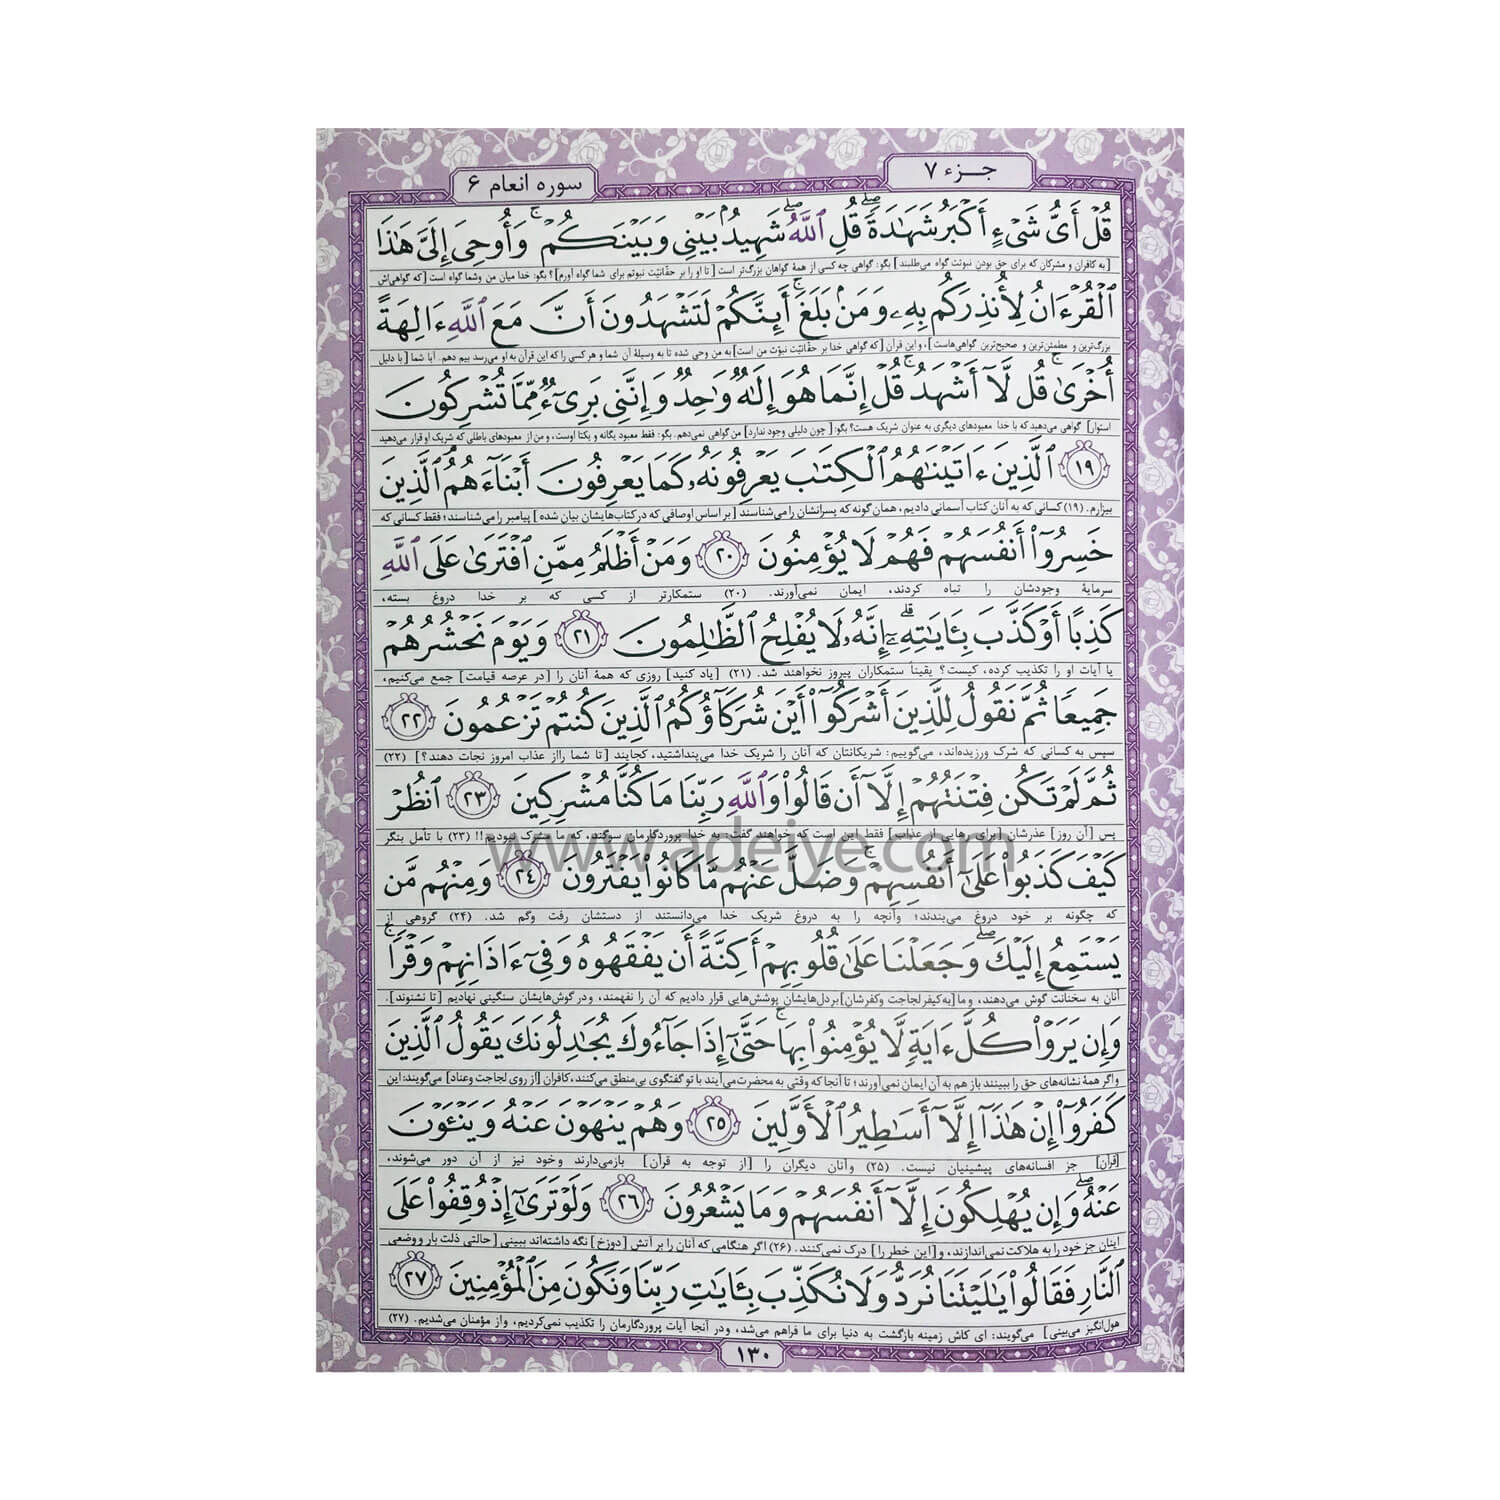 کتاب قرآن (وزیری، گالینگور، عثمان طه)-عکس متن5